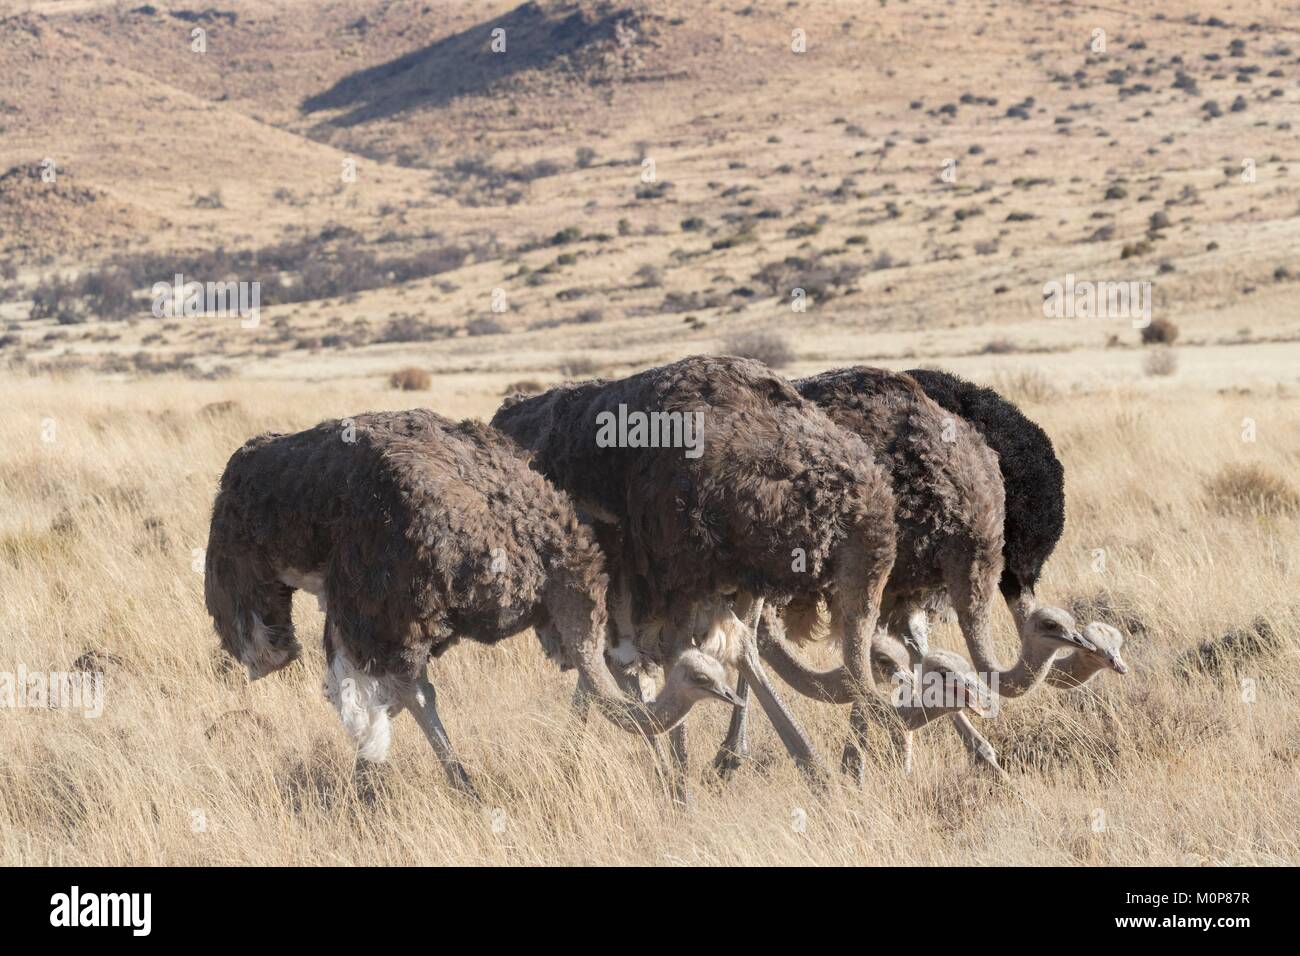 L'Afrique du Sud,supérieure Karoo,ou d'Autruche autruche commune (Struthio camelus),dans la savane, le mâle est noir, la femelle est de couleur brune Banque D'Images